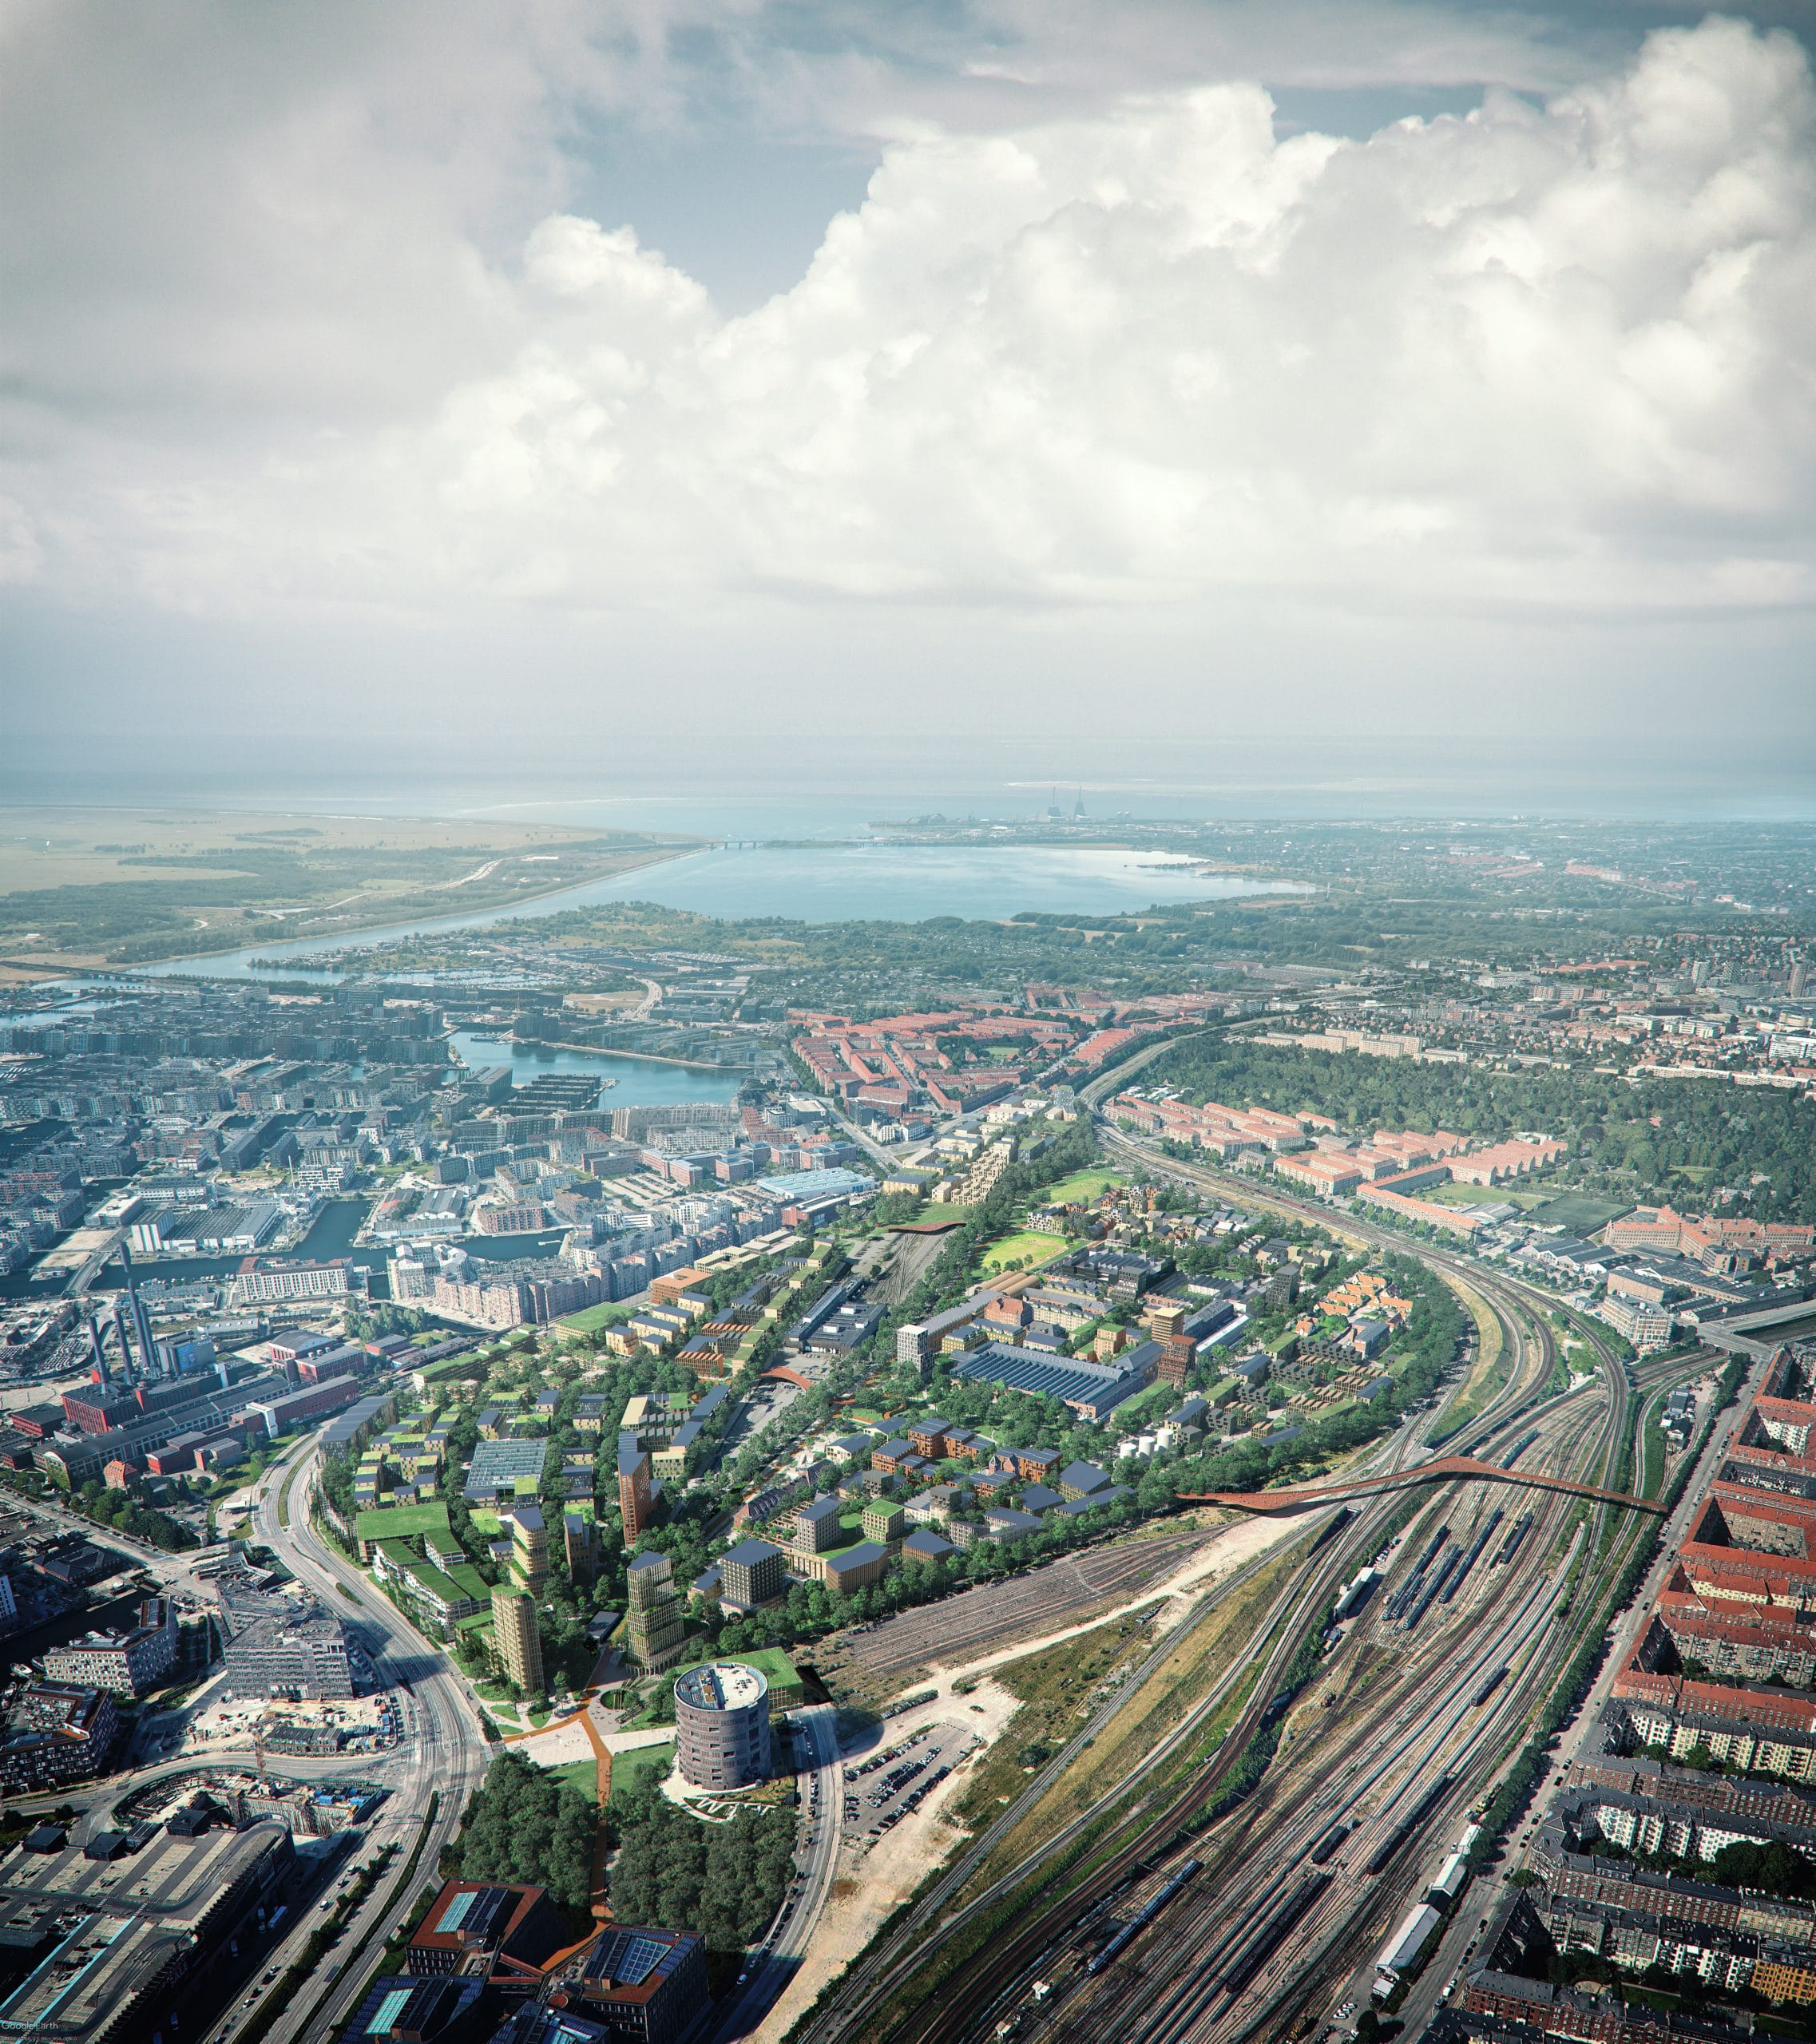 Der neue Bezirk Jernbanebyen soll auf dem Gelände des stillgelegten Güterbahnhofs in Kopenhagen entstehen. (Visualisierung: COBE architects)